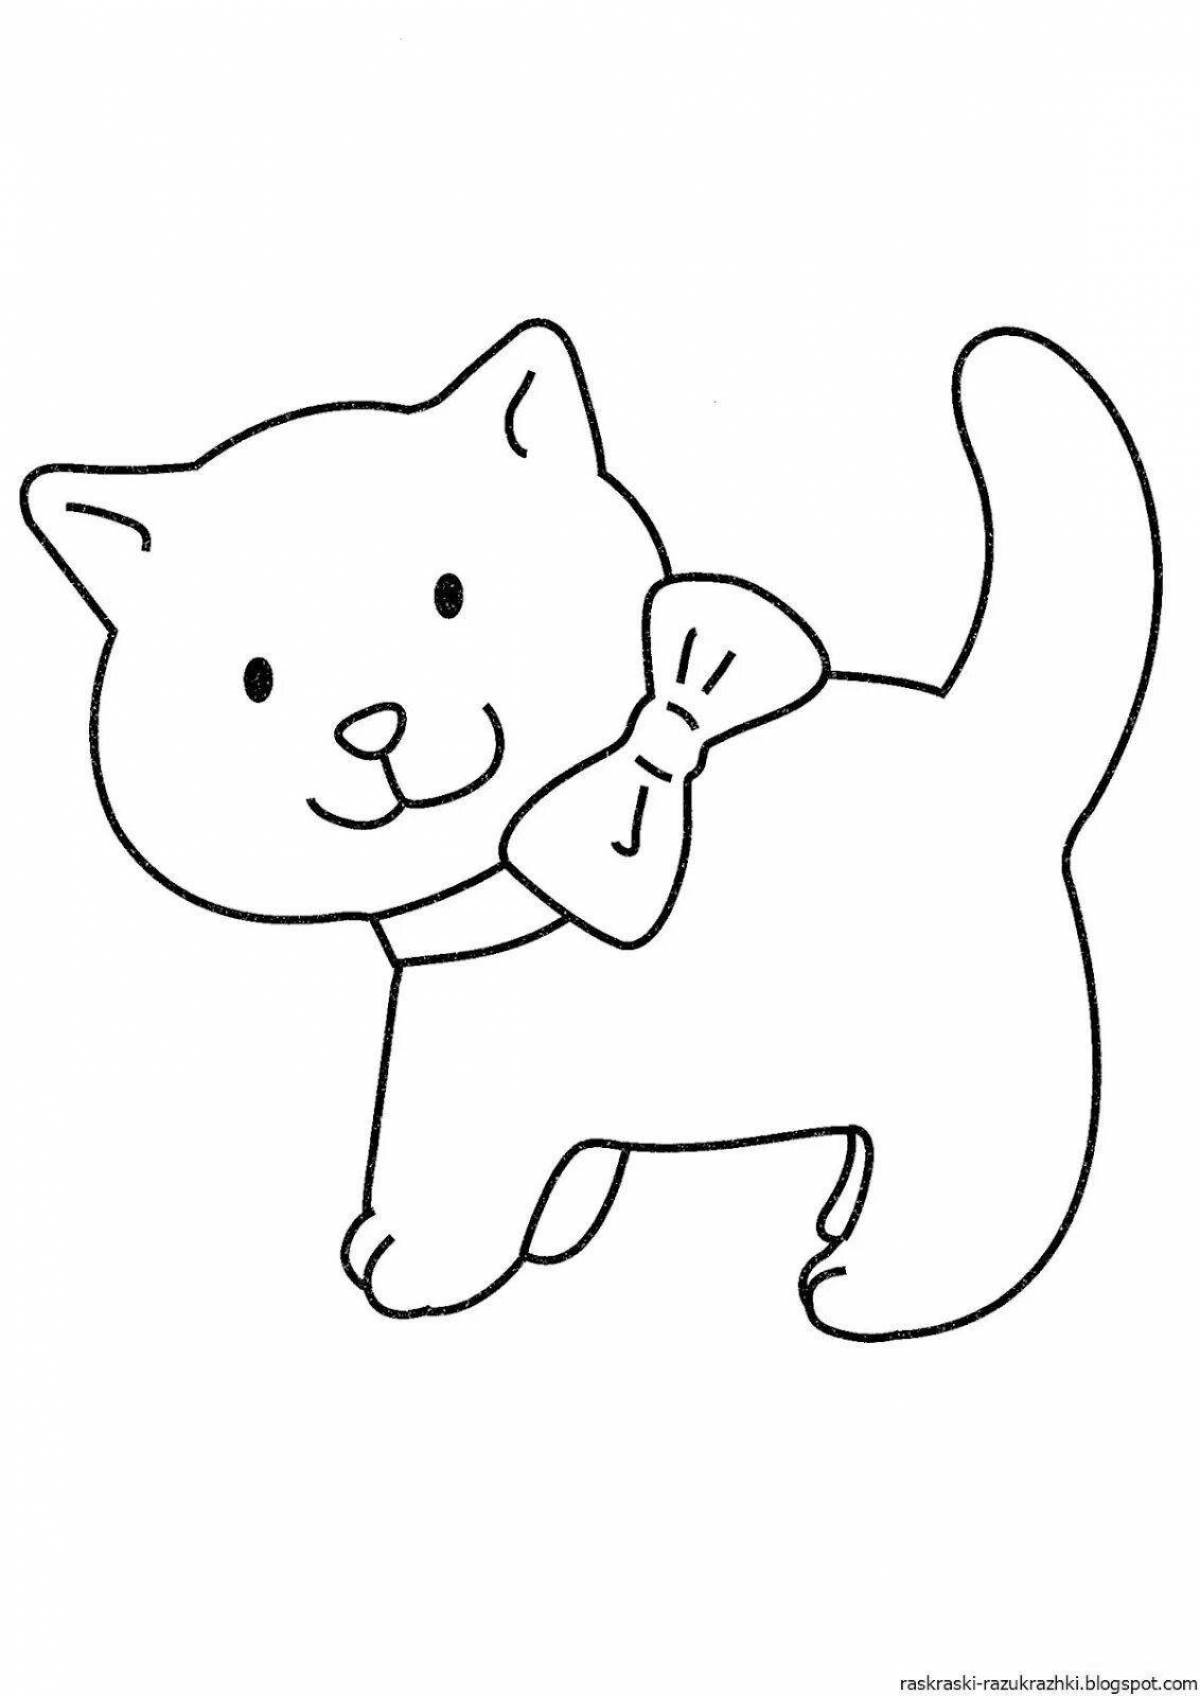 Раскраска энергичный кот для детей